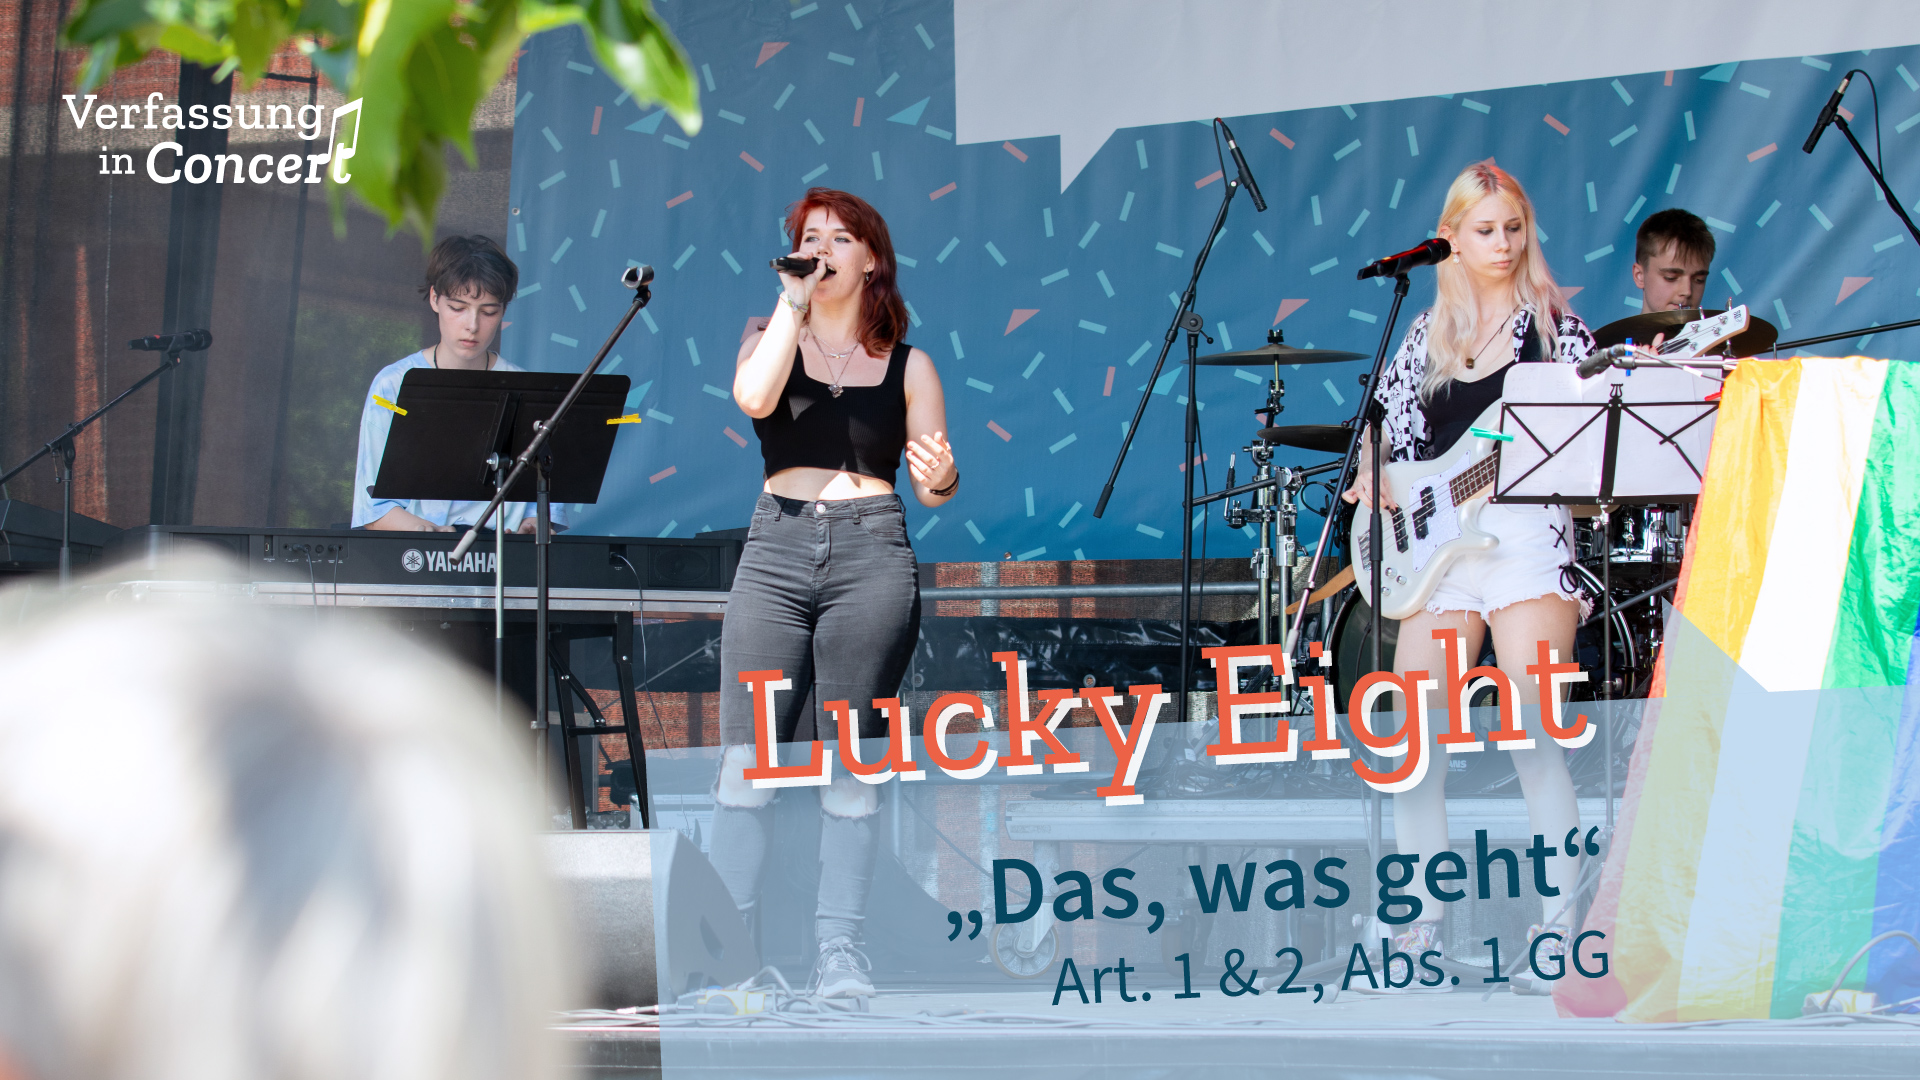 Die Band "Lucky Eight" auf der Bühne.